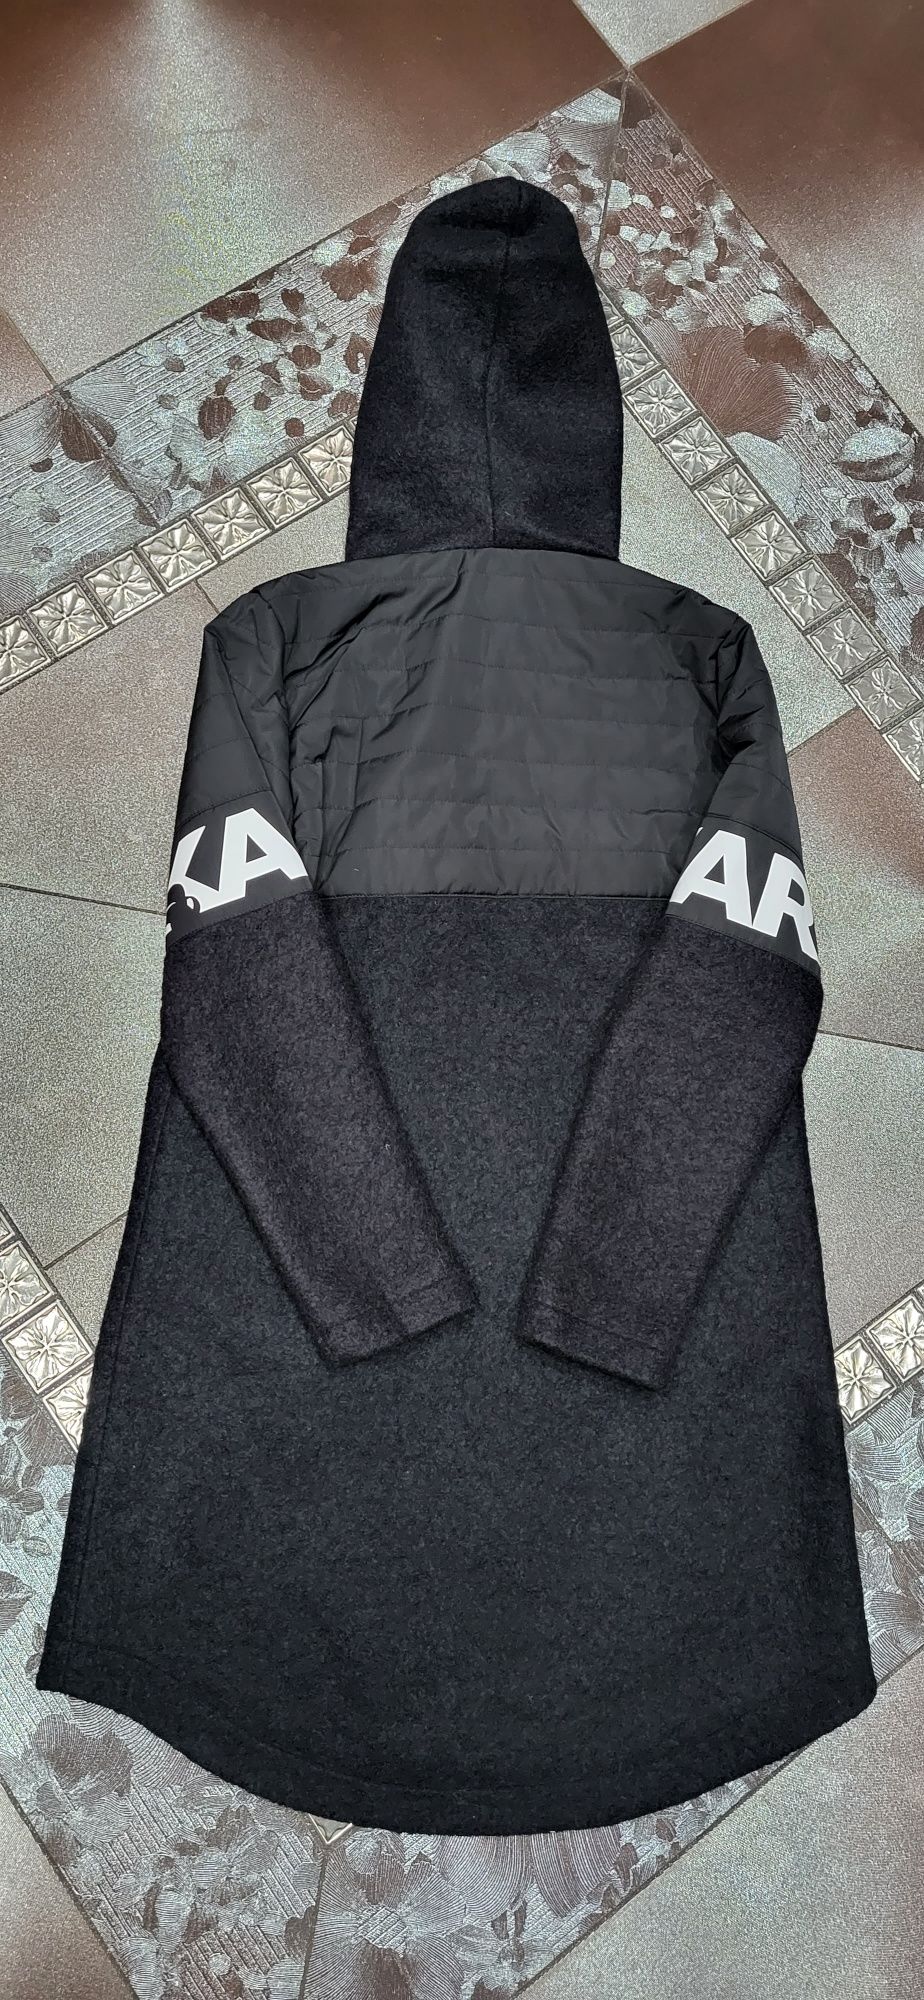 Karl ludzik płaszcz damski czarny kurtka logo premium jesienno zimowy